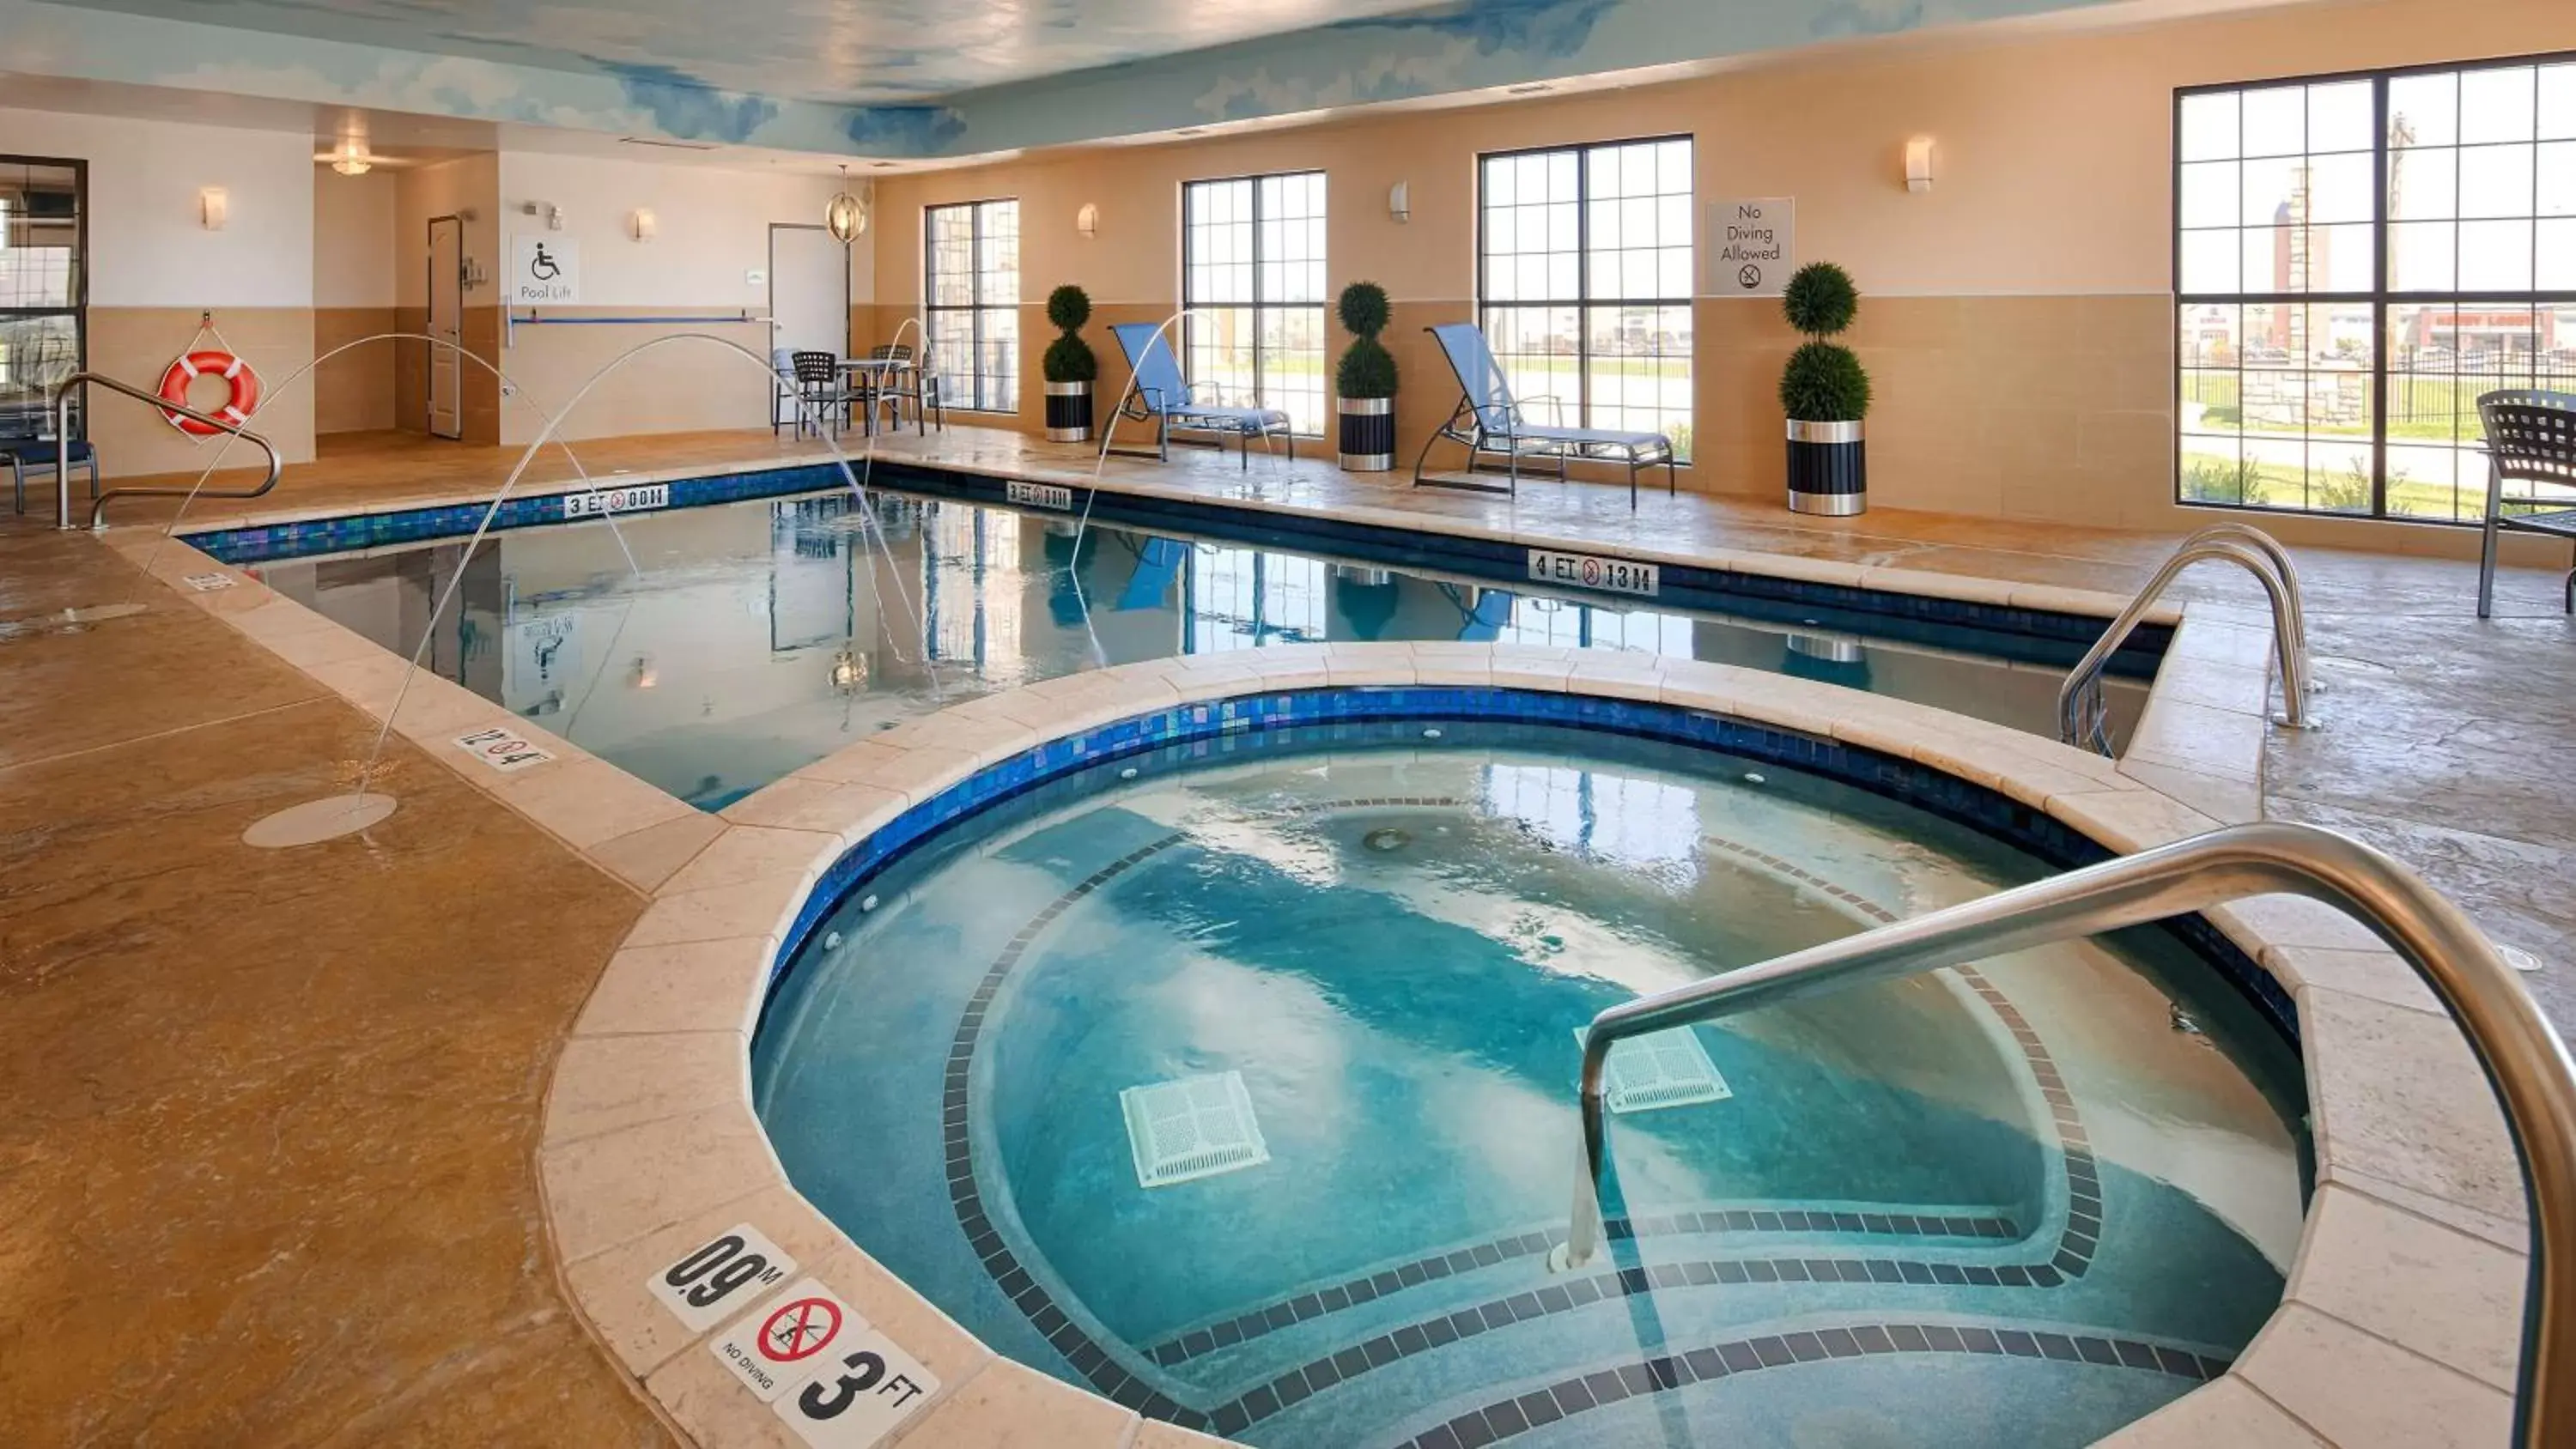 On site, Swimming Pool in Best Western Plus Emerald Inn & Suites